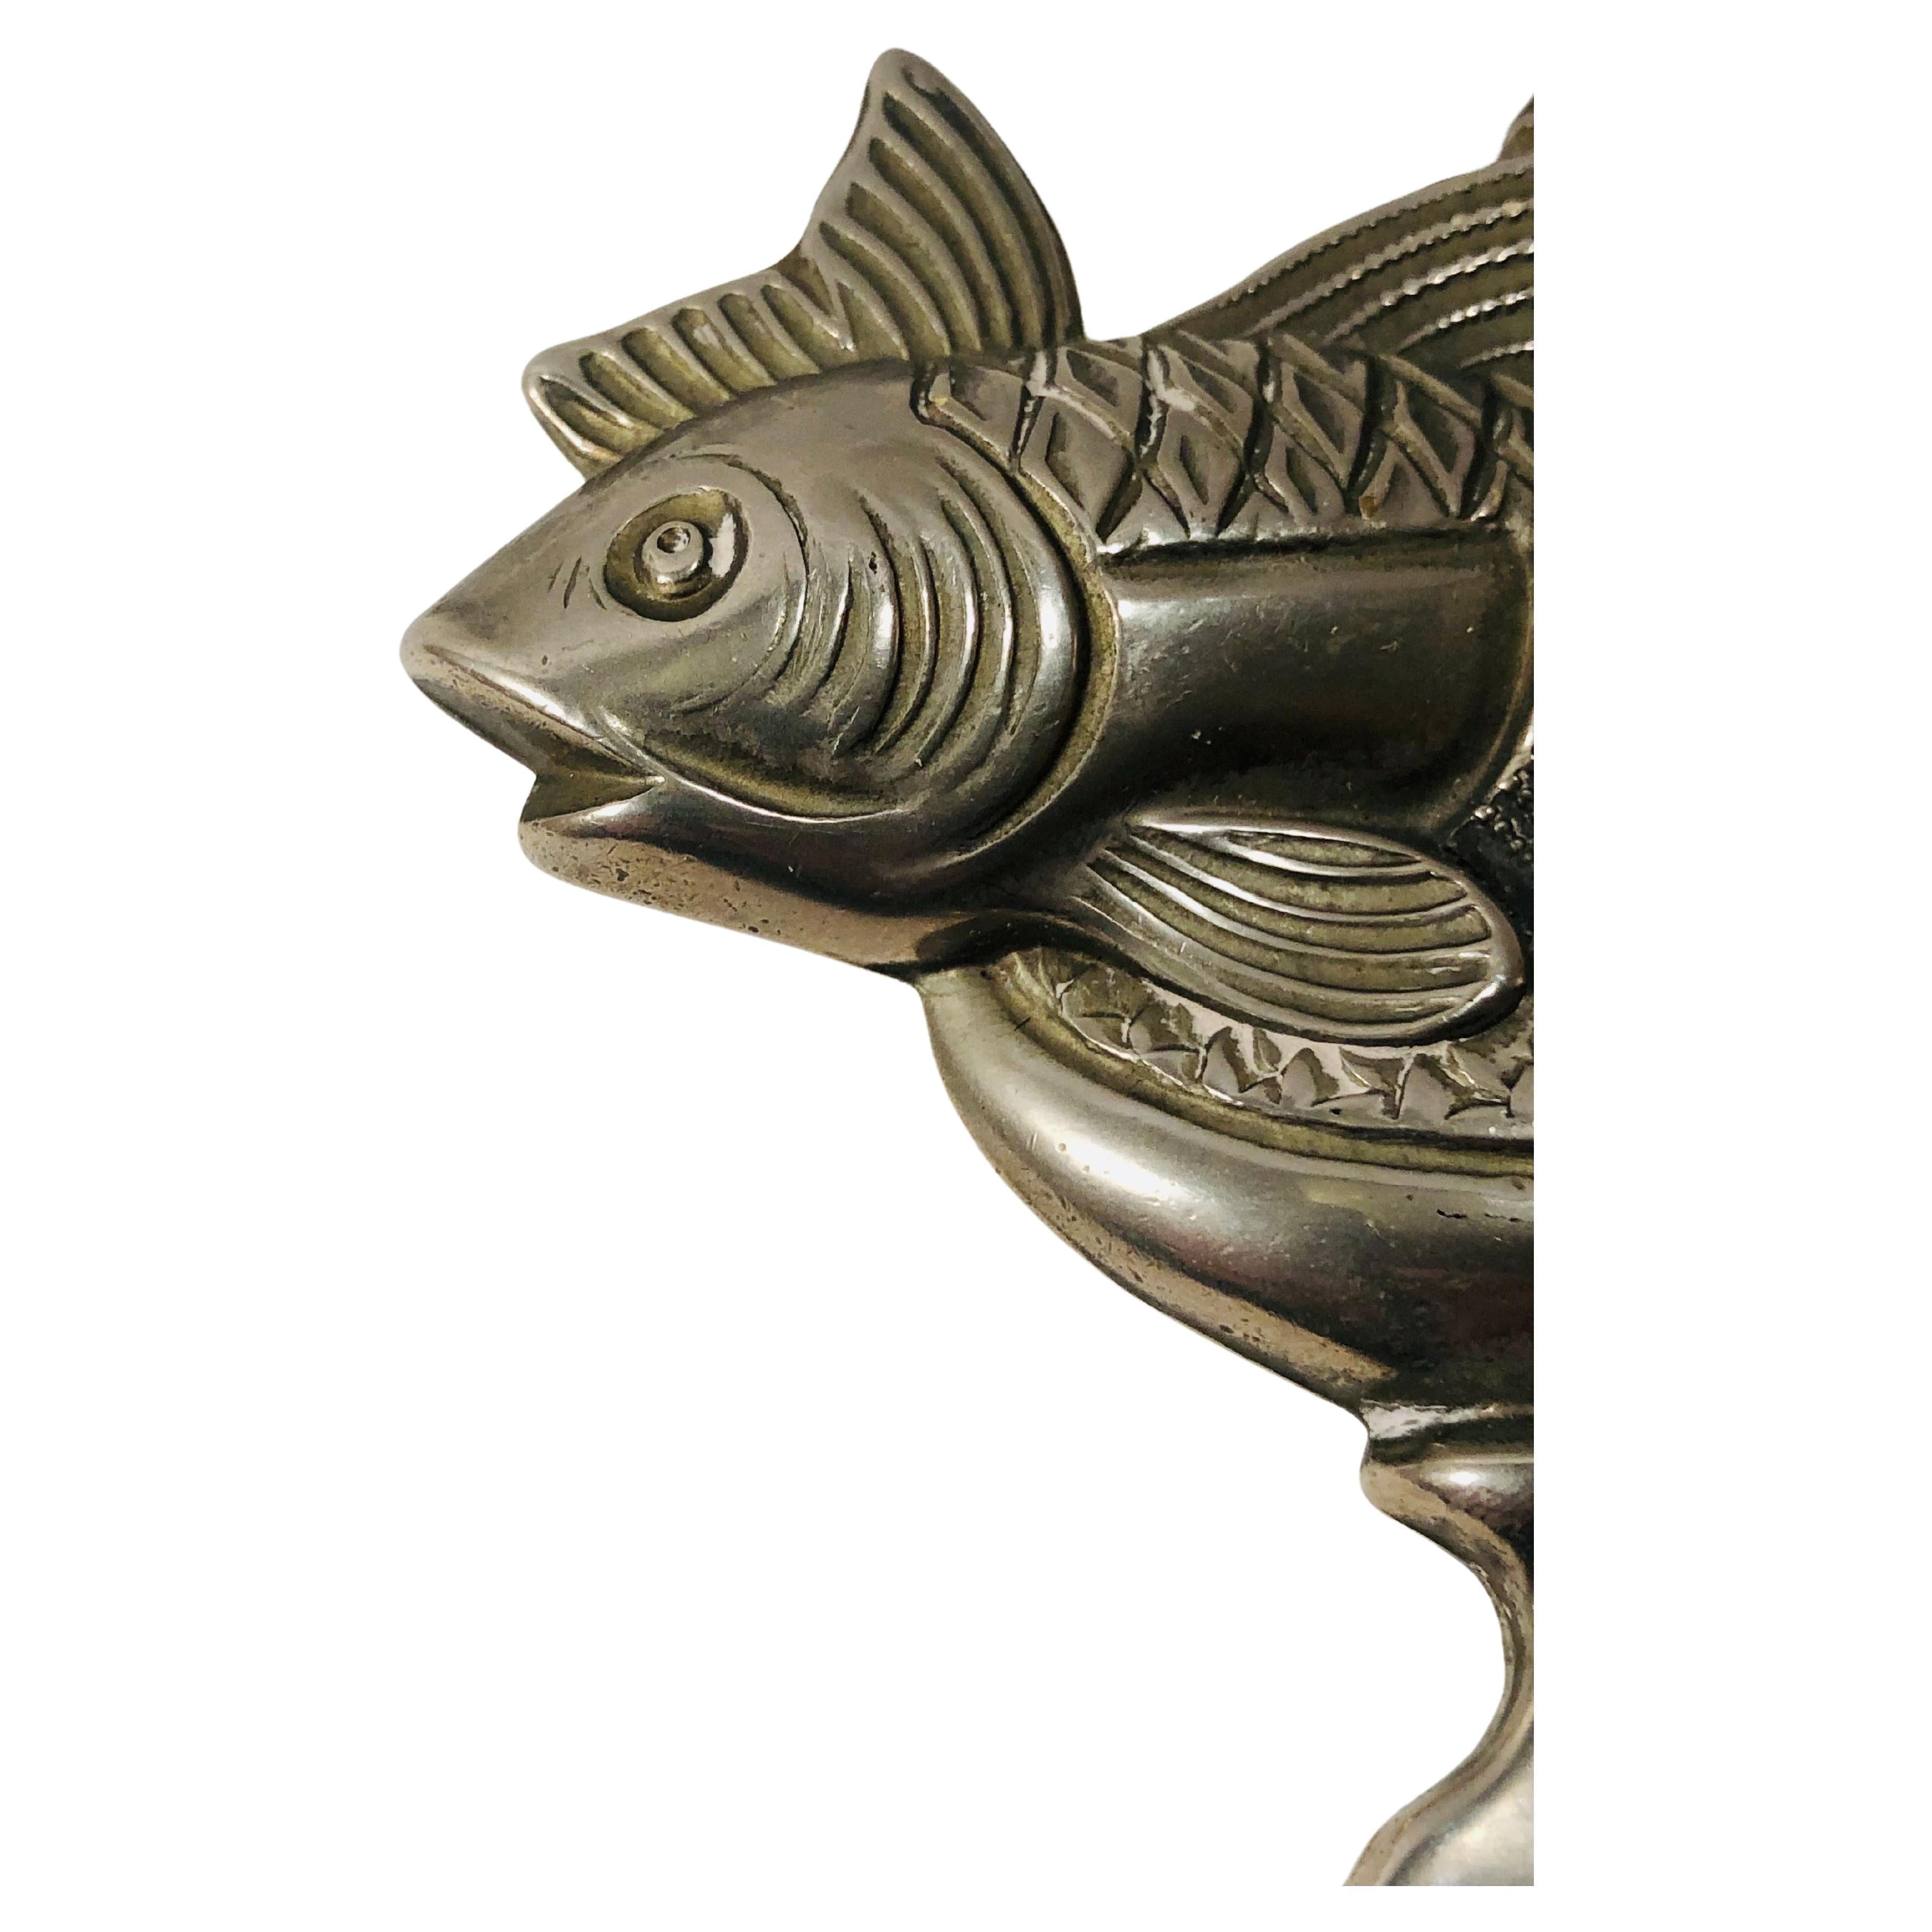 Ein Flaschenöffner aus den 1970er Jahren aus versilbertem Metall, der die Tierkreiszeichen darstellt, darunter das Zeichen Fische.

Ein funktioneller und dekorativer Gegenstand, ideal für Sammler oder Liebhaber von Vintage-Design und